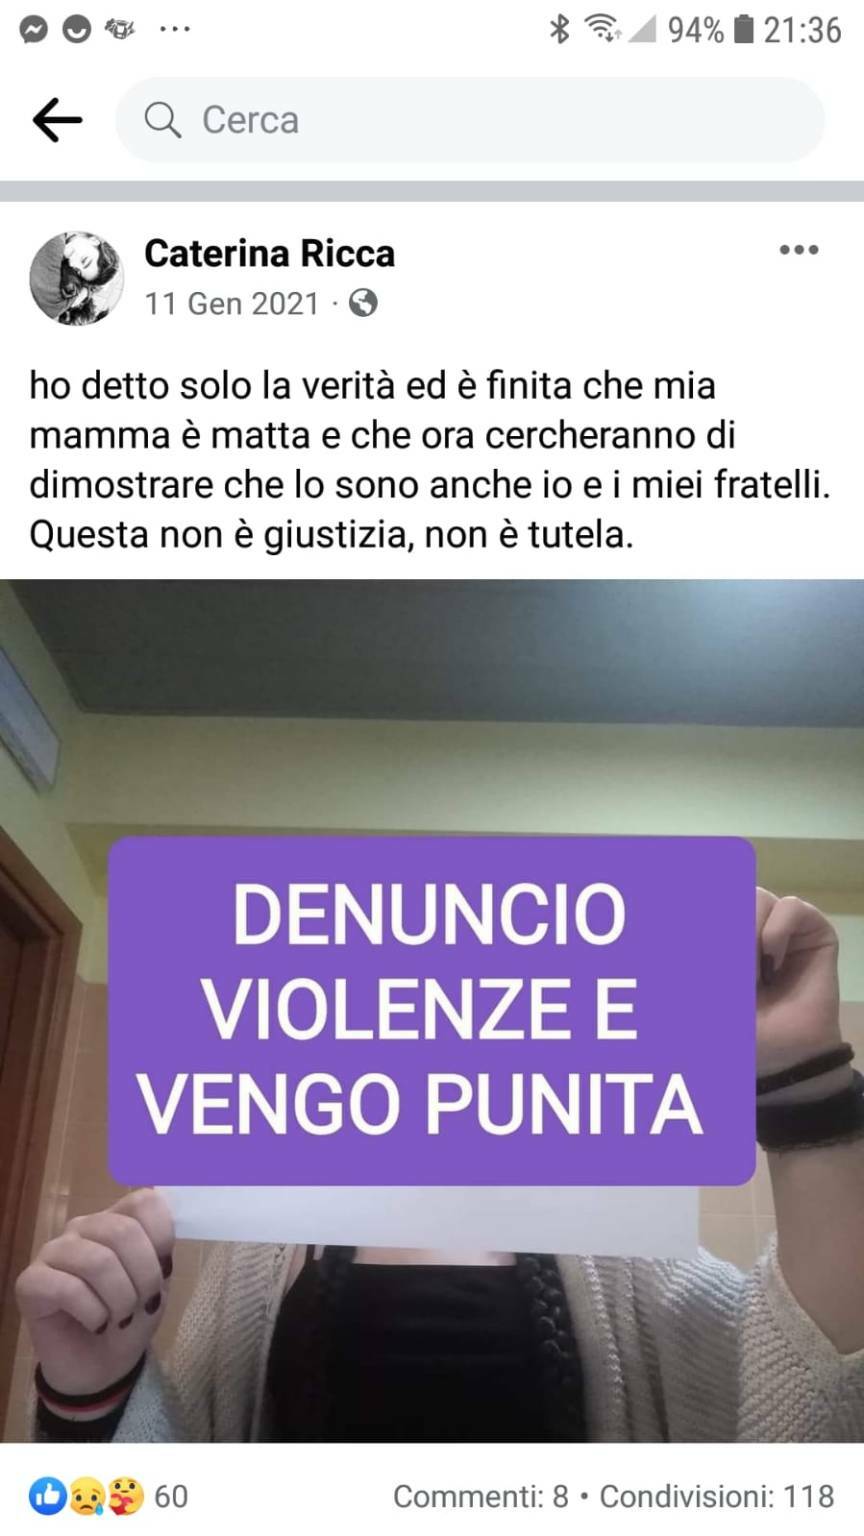 Avviso di garanzia per 22 persone del gruppo Facebook “Aiutiamo i quattro fratellini di Cuneo”